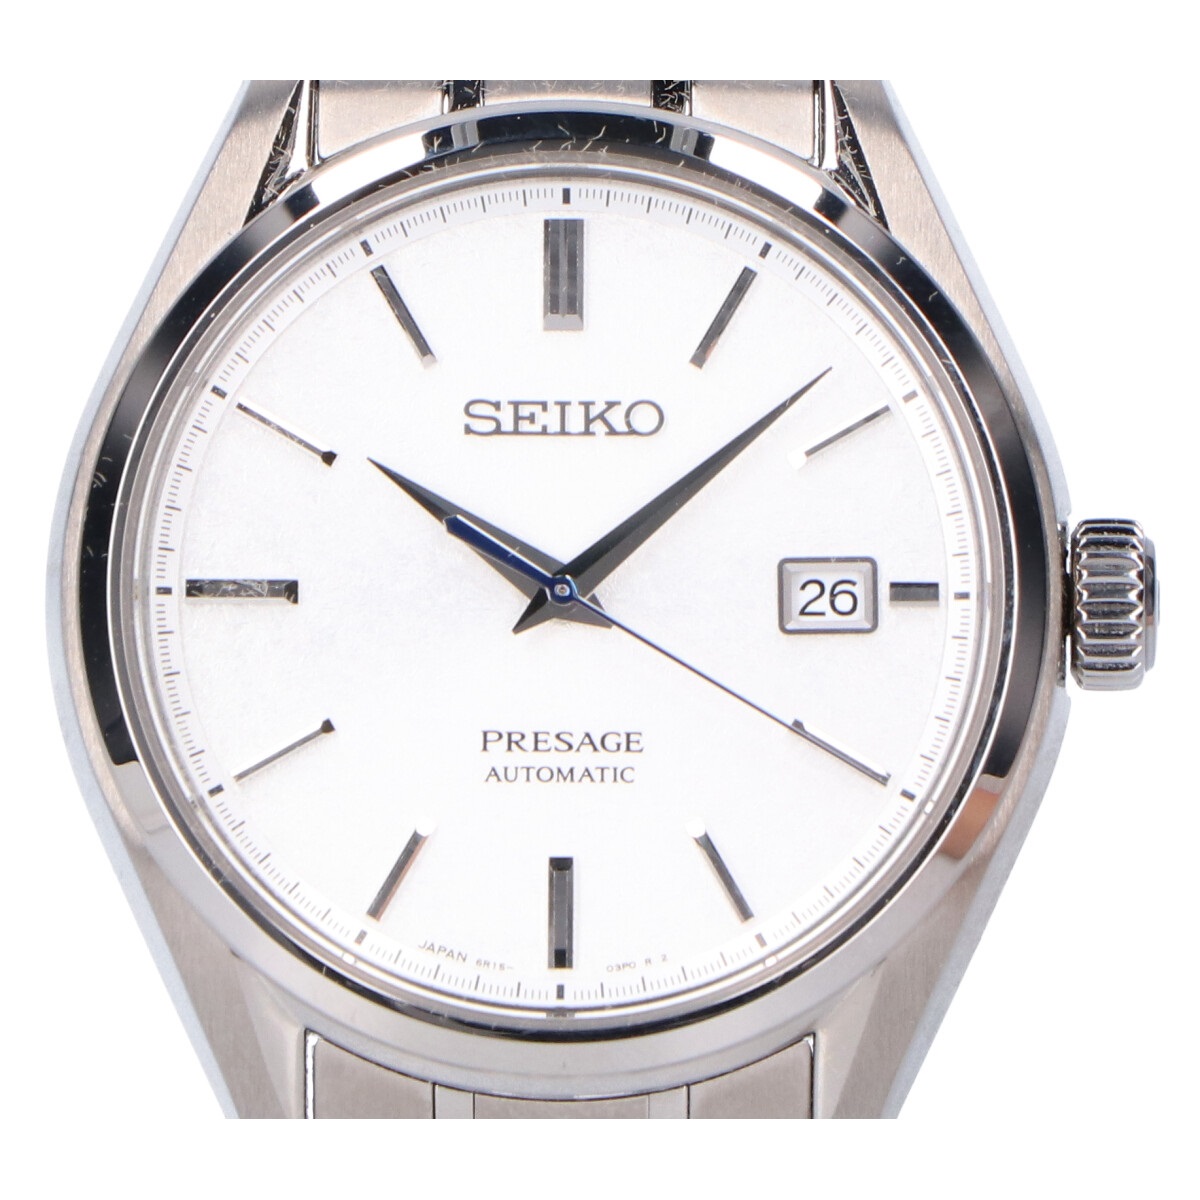 セイコーのSARX055 Cal.6R15 プレザージュ シースルーバック 手巻き付自動巻き 腕時計の買取実績です。